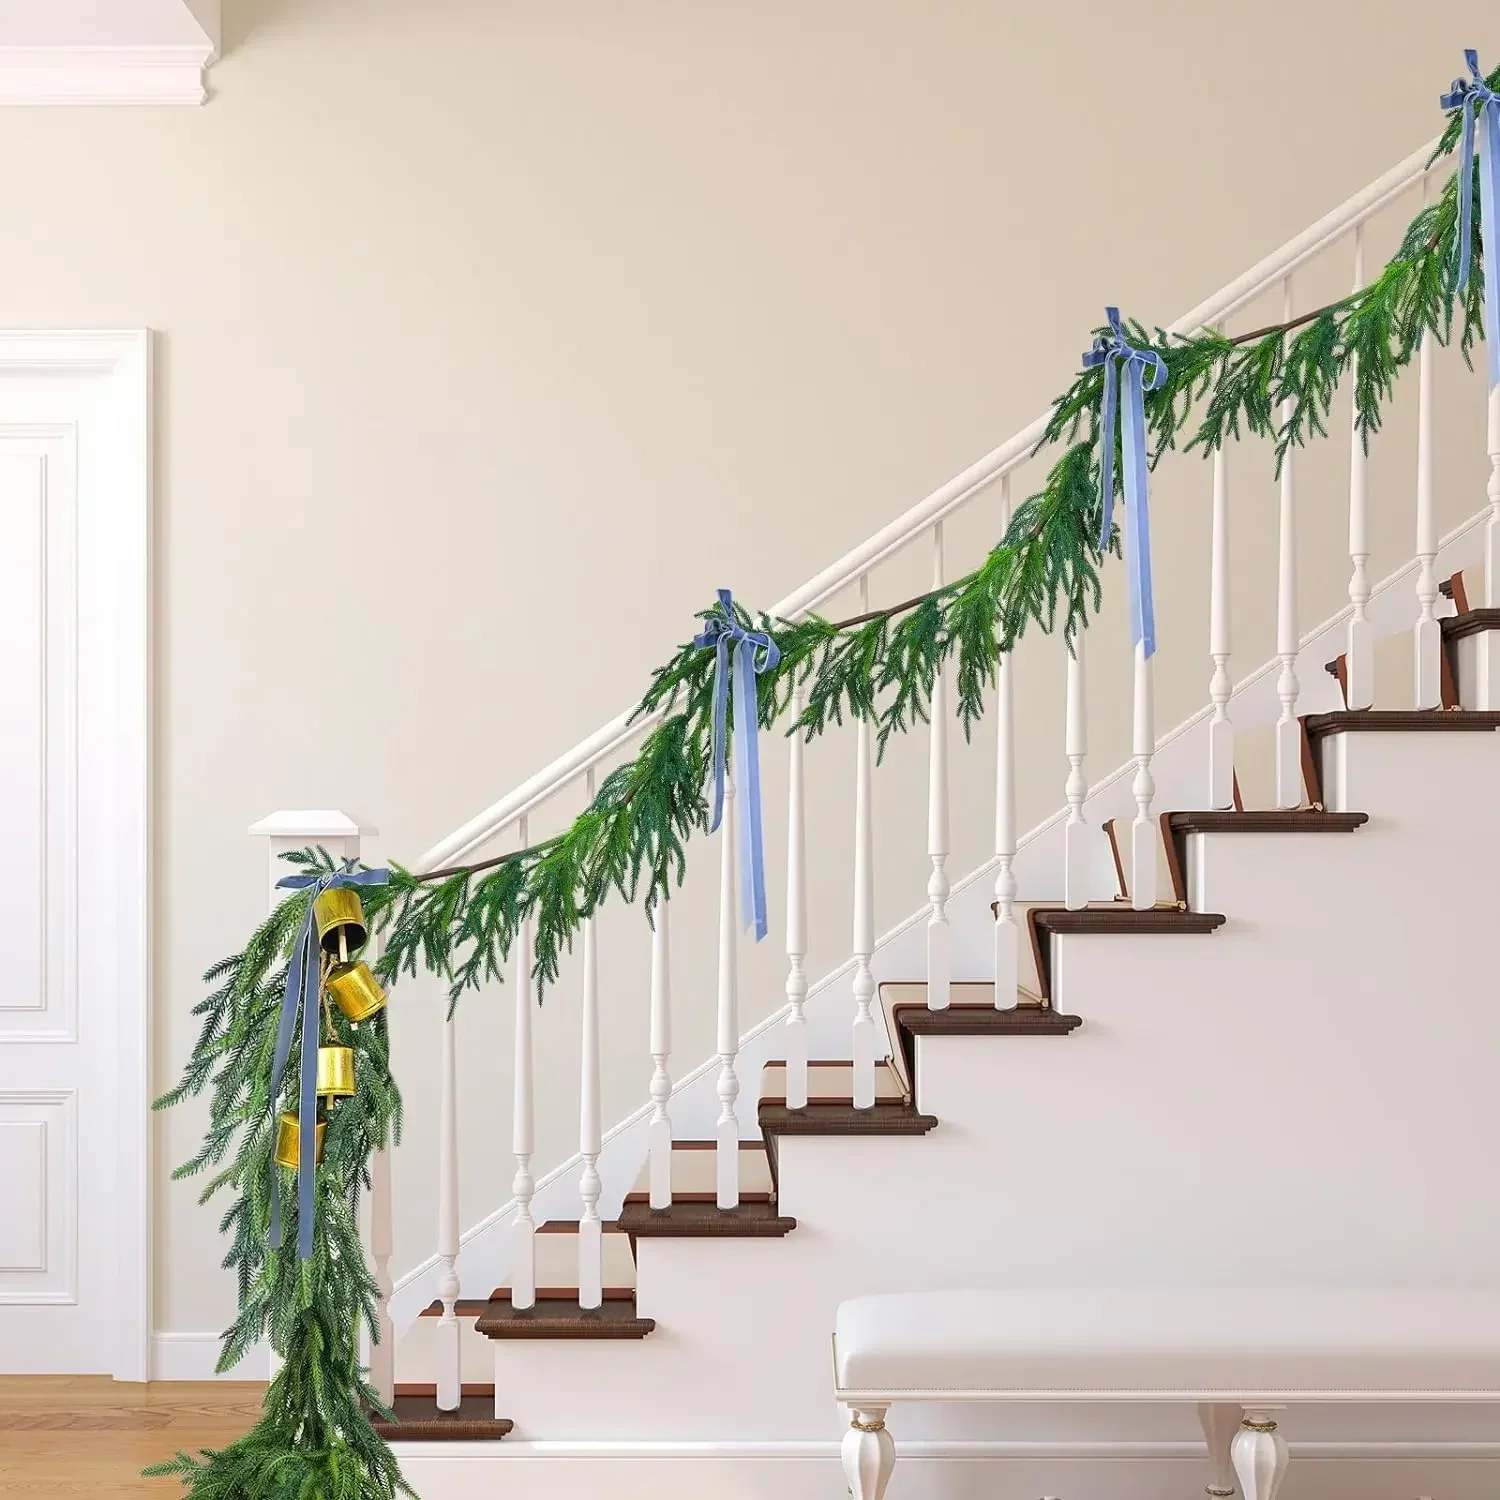 

Рождественская сосновая гирлянда 1,5 м из Норфолка, искусственная сосновая зелень для праздника, внутренний декор для лестницы, стола, искусственная сосновая гирлянда